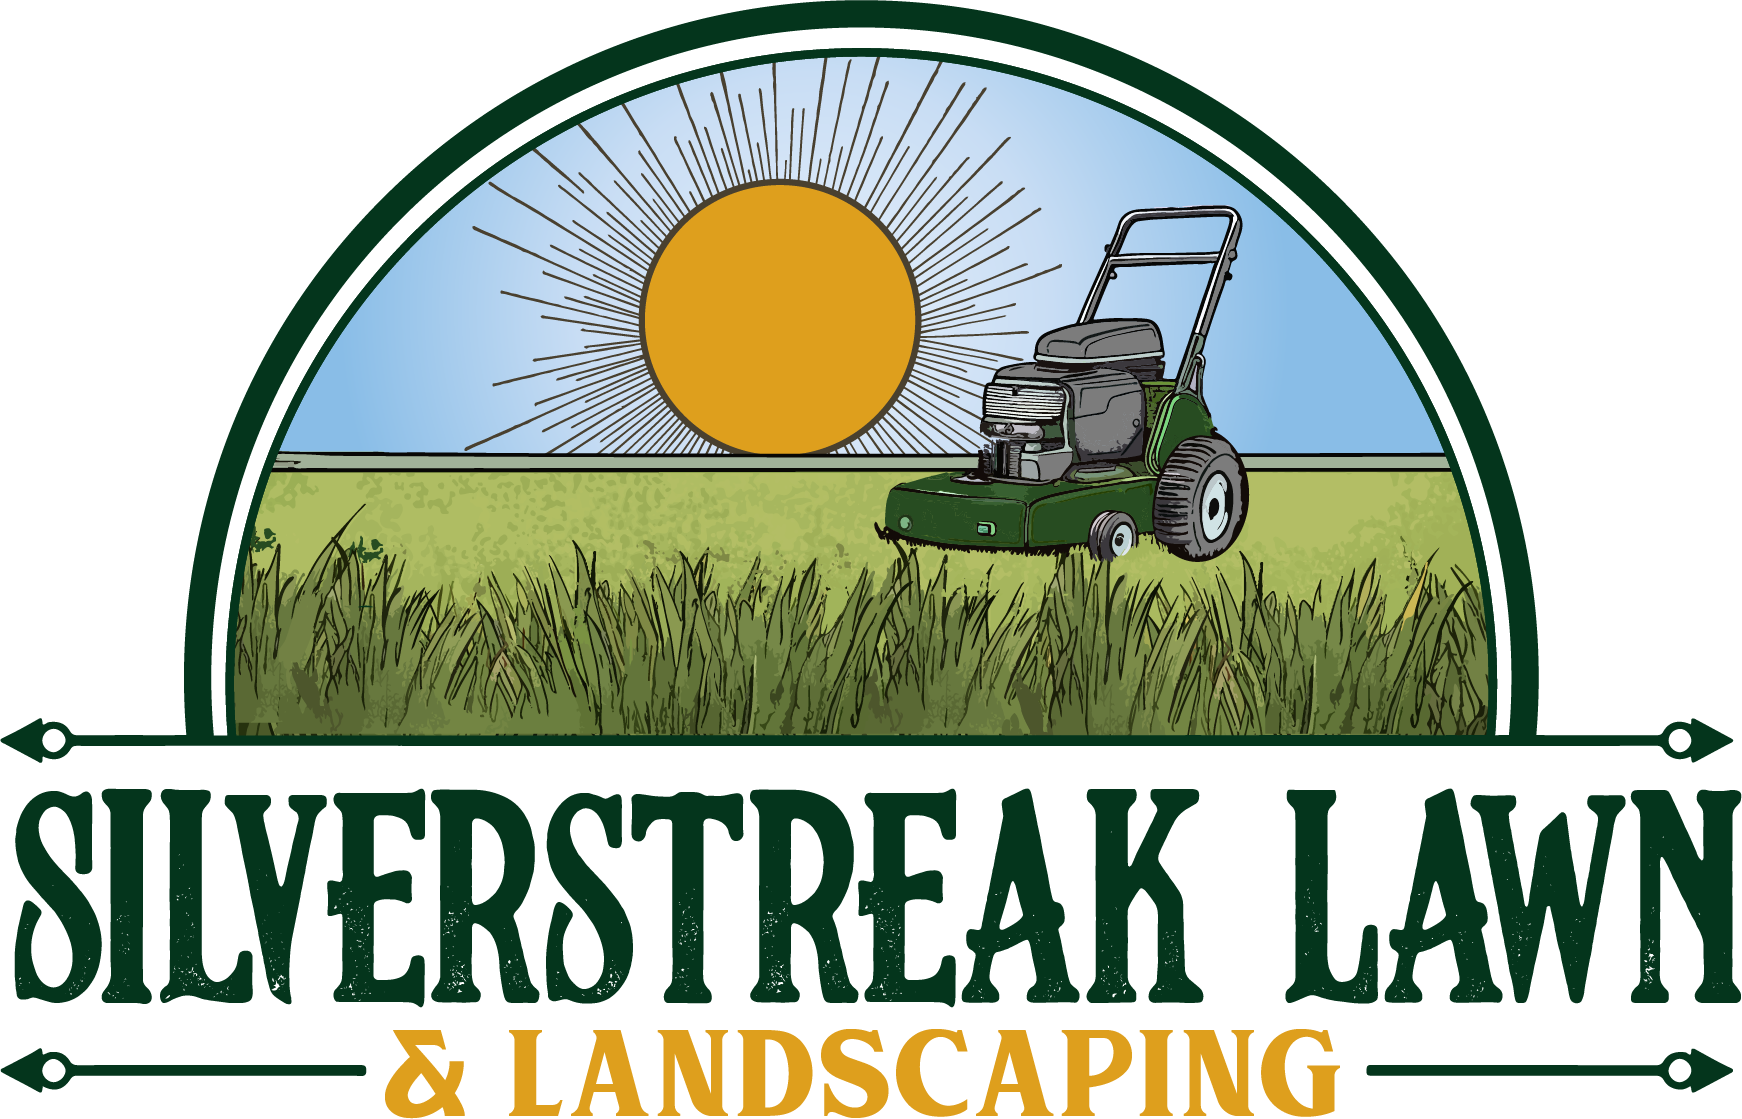 Silverstreak Lawn & Landscaping